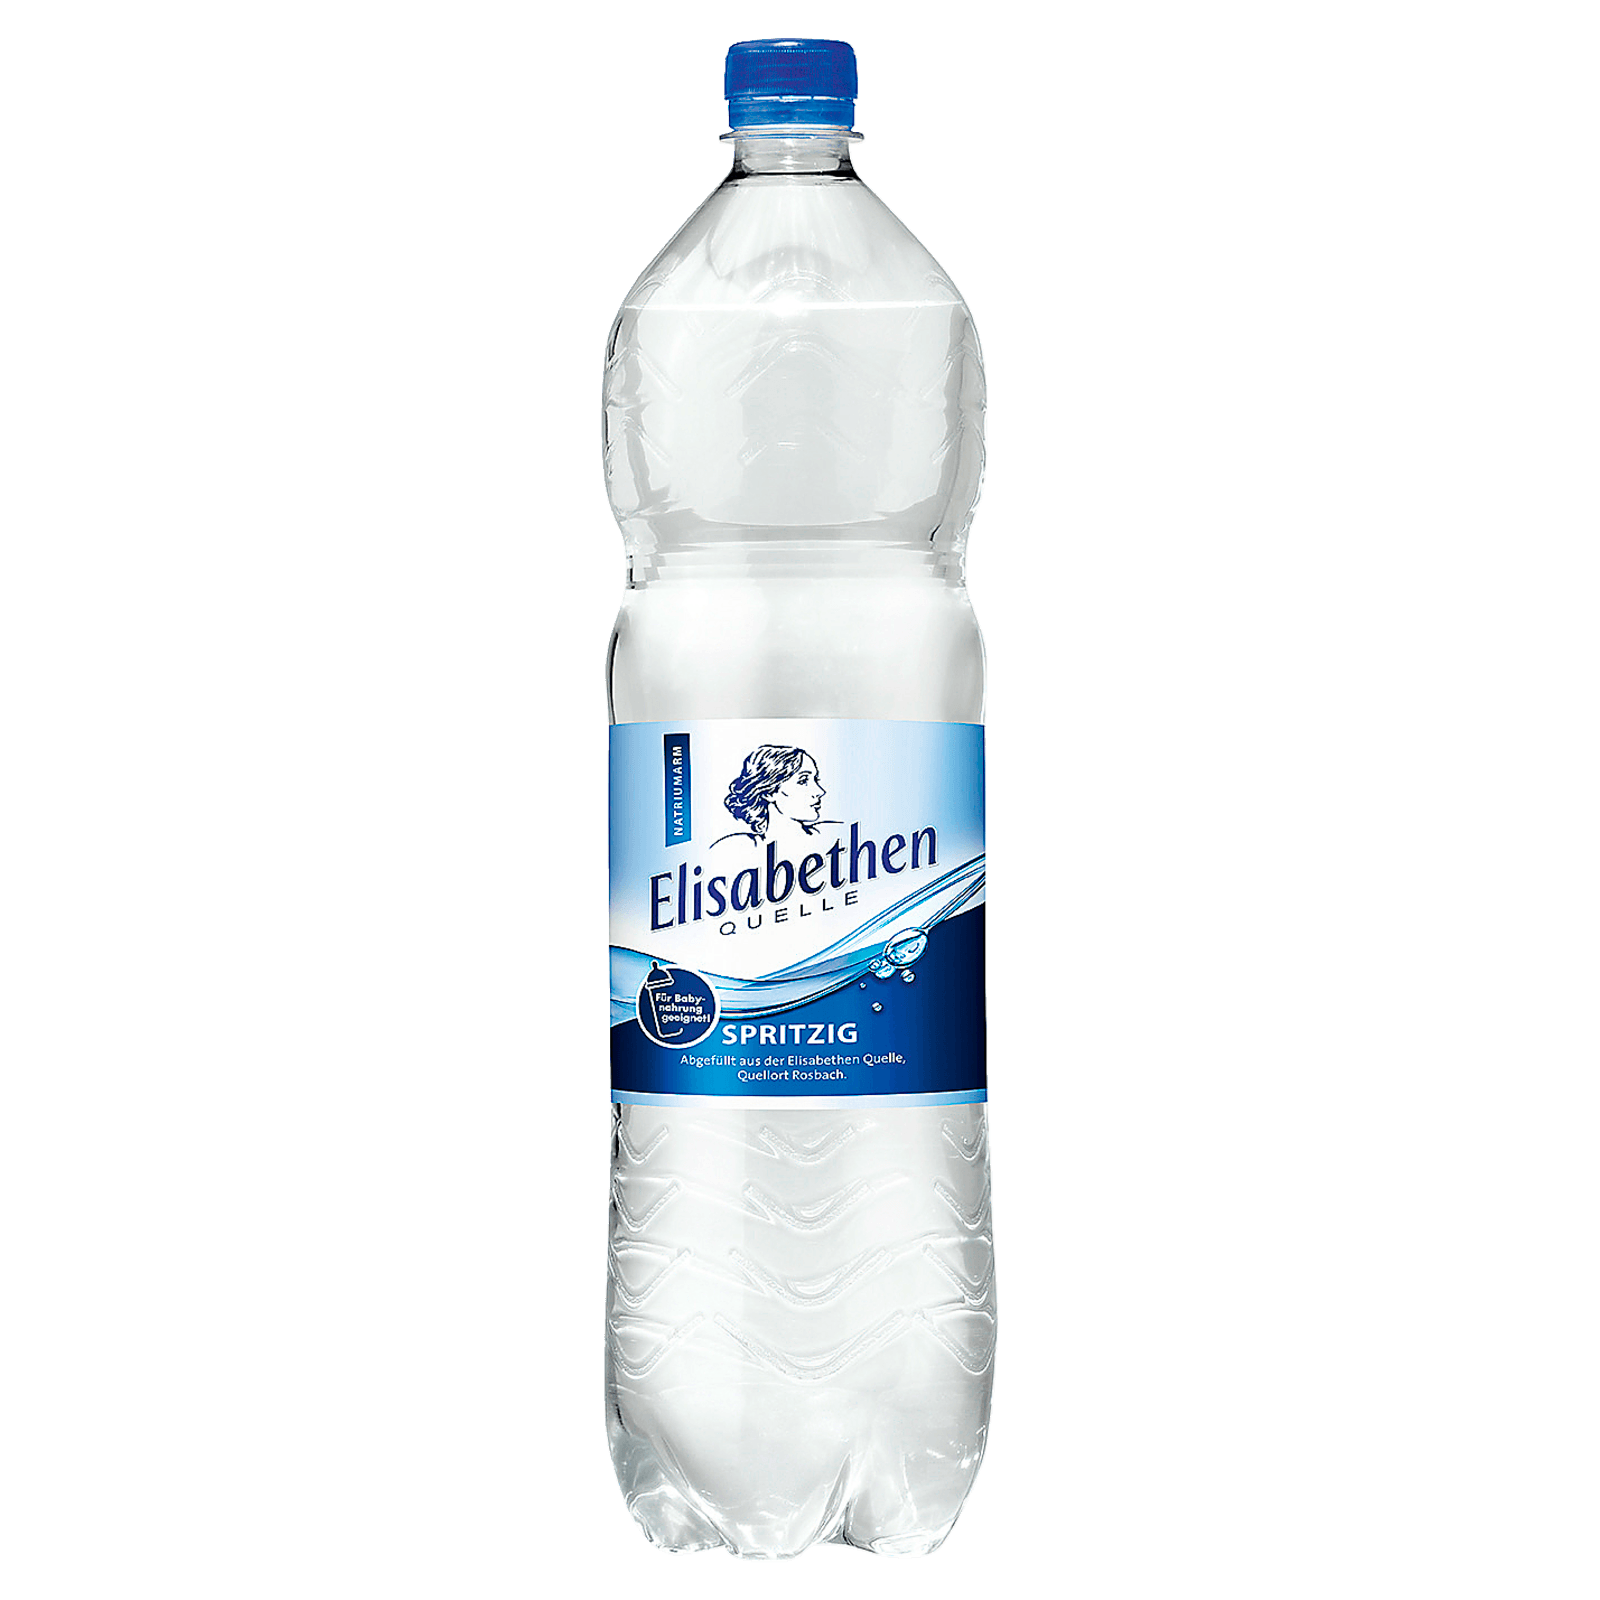 Elisabethen Quelle Mineralwasser spritzig 1,5l  für 0.95 EUR